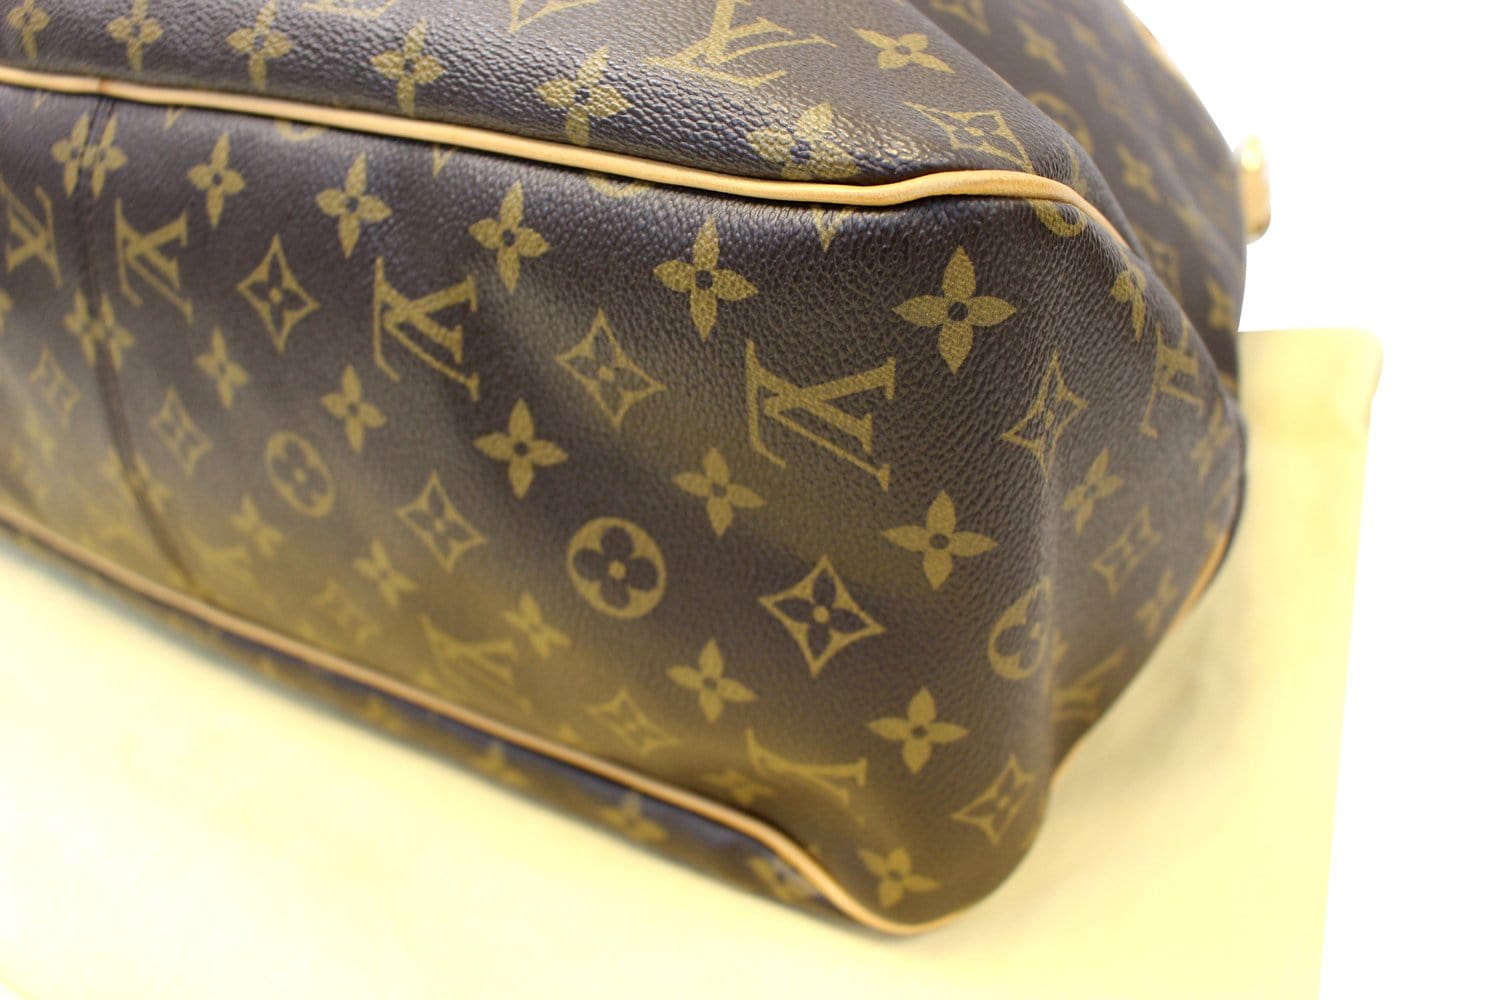 Pre-Owned Louis Vuitton Bags for Women - Vintage - FARFETCH AU